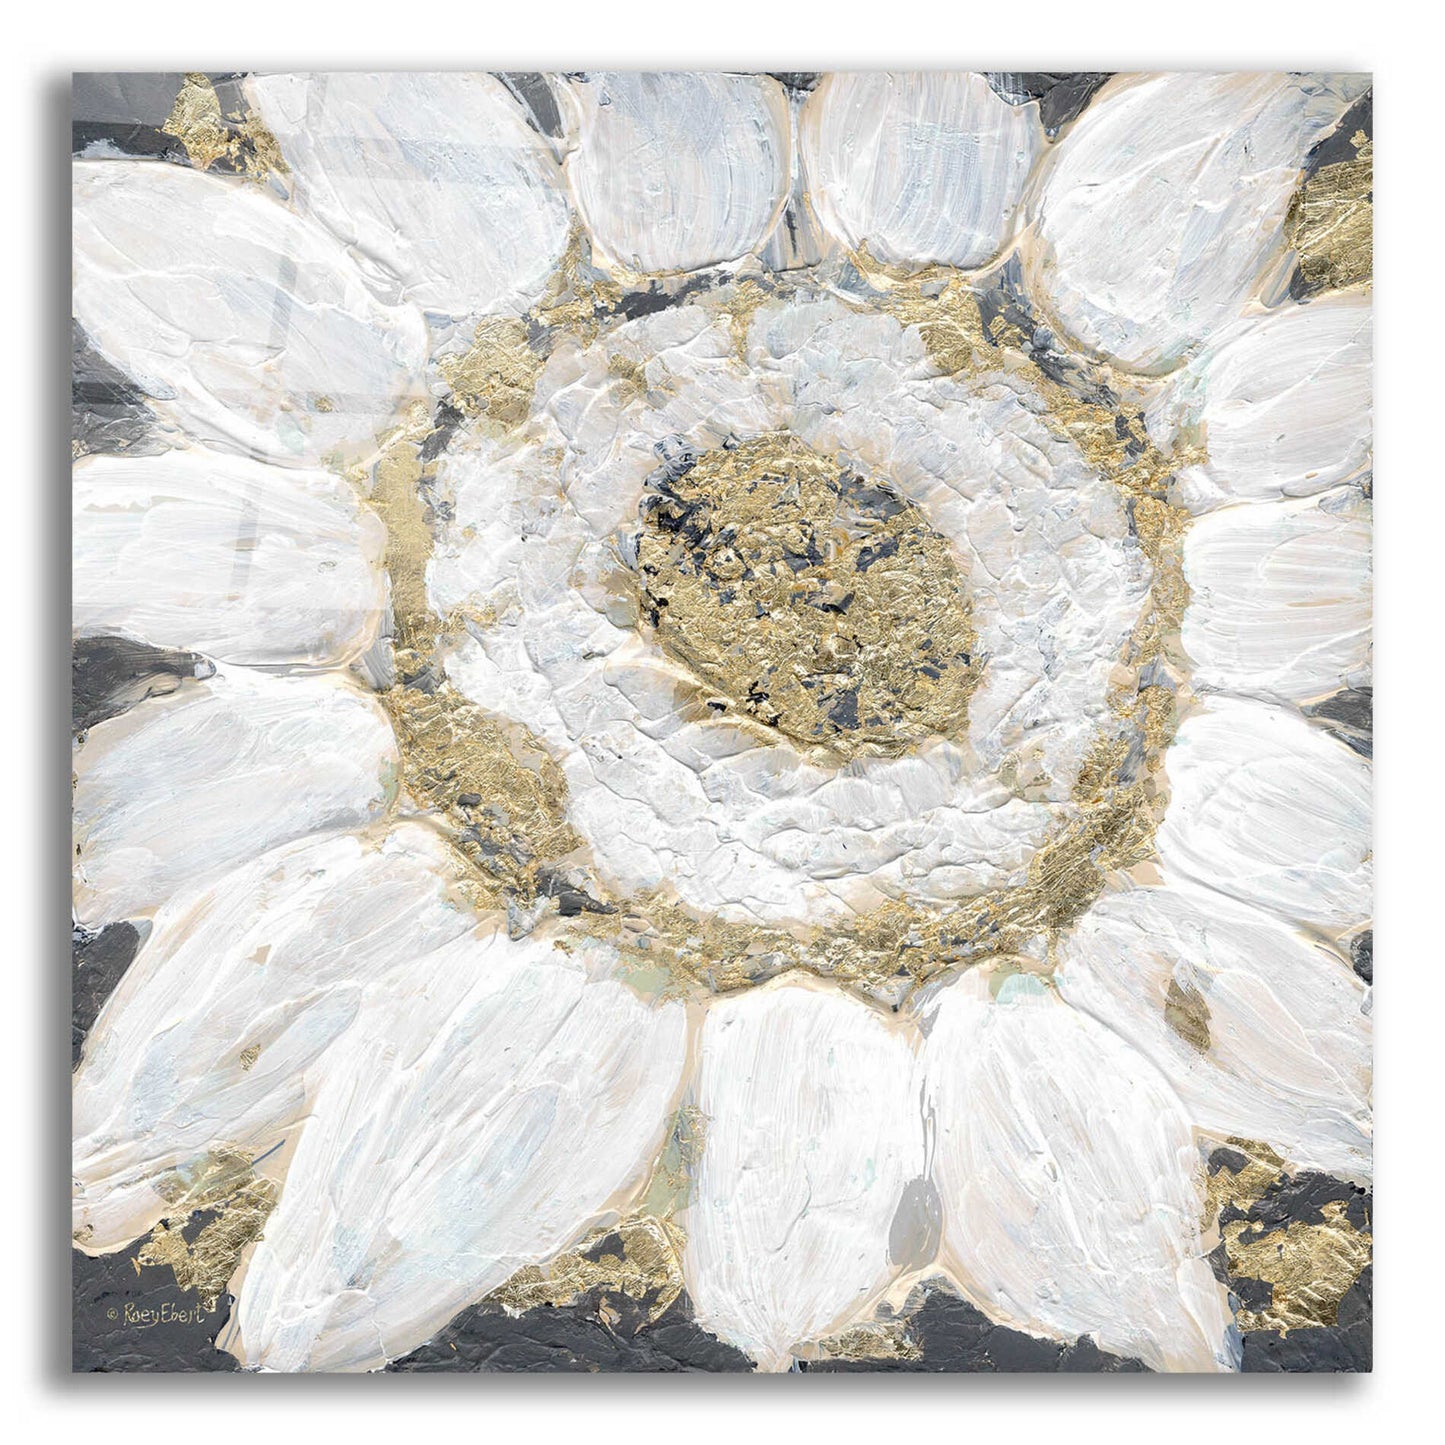 Epic Art 'Golden Sunflower' by Roey Ebert, Acrylic Glass Wall Art,12x12